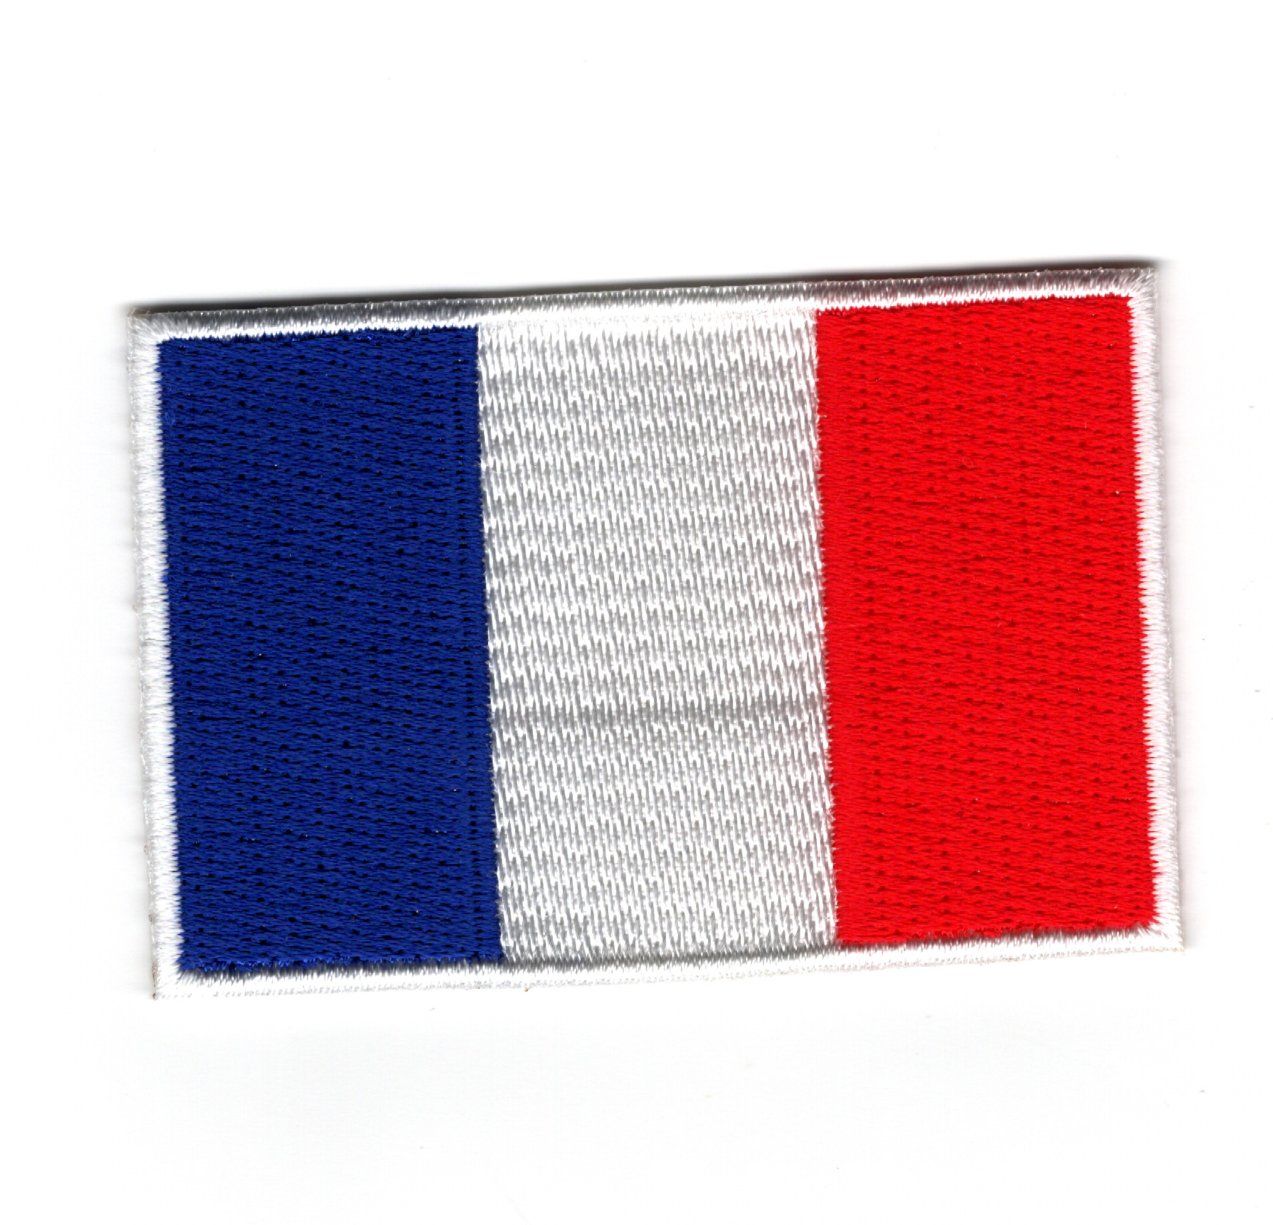 Patch drapeau France rond – Drapeaux du Monde